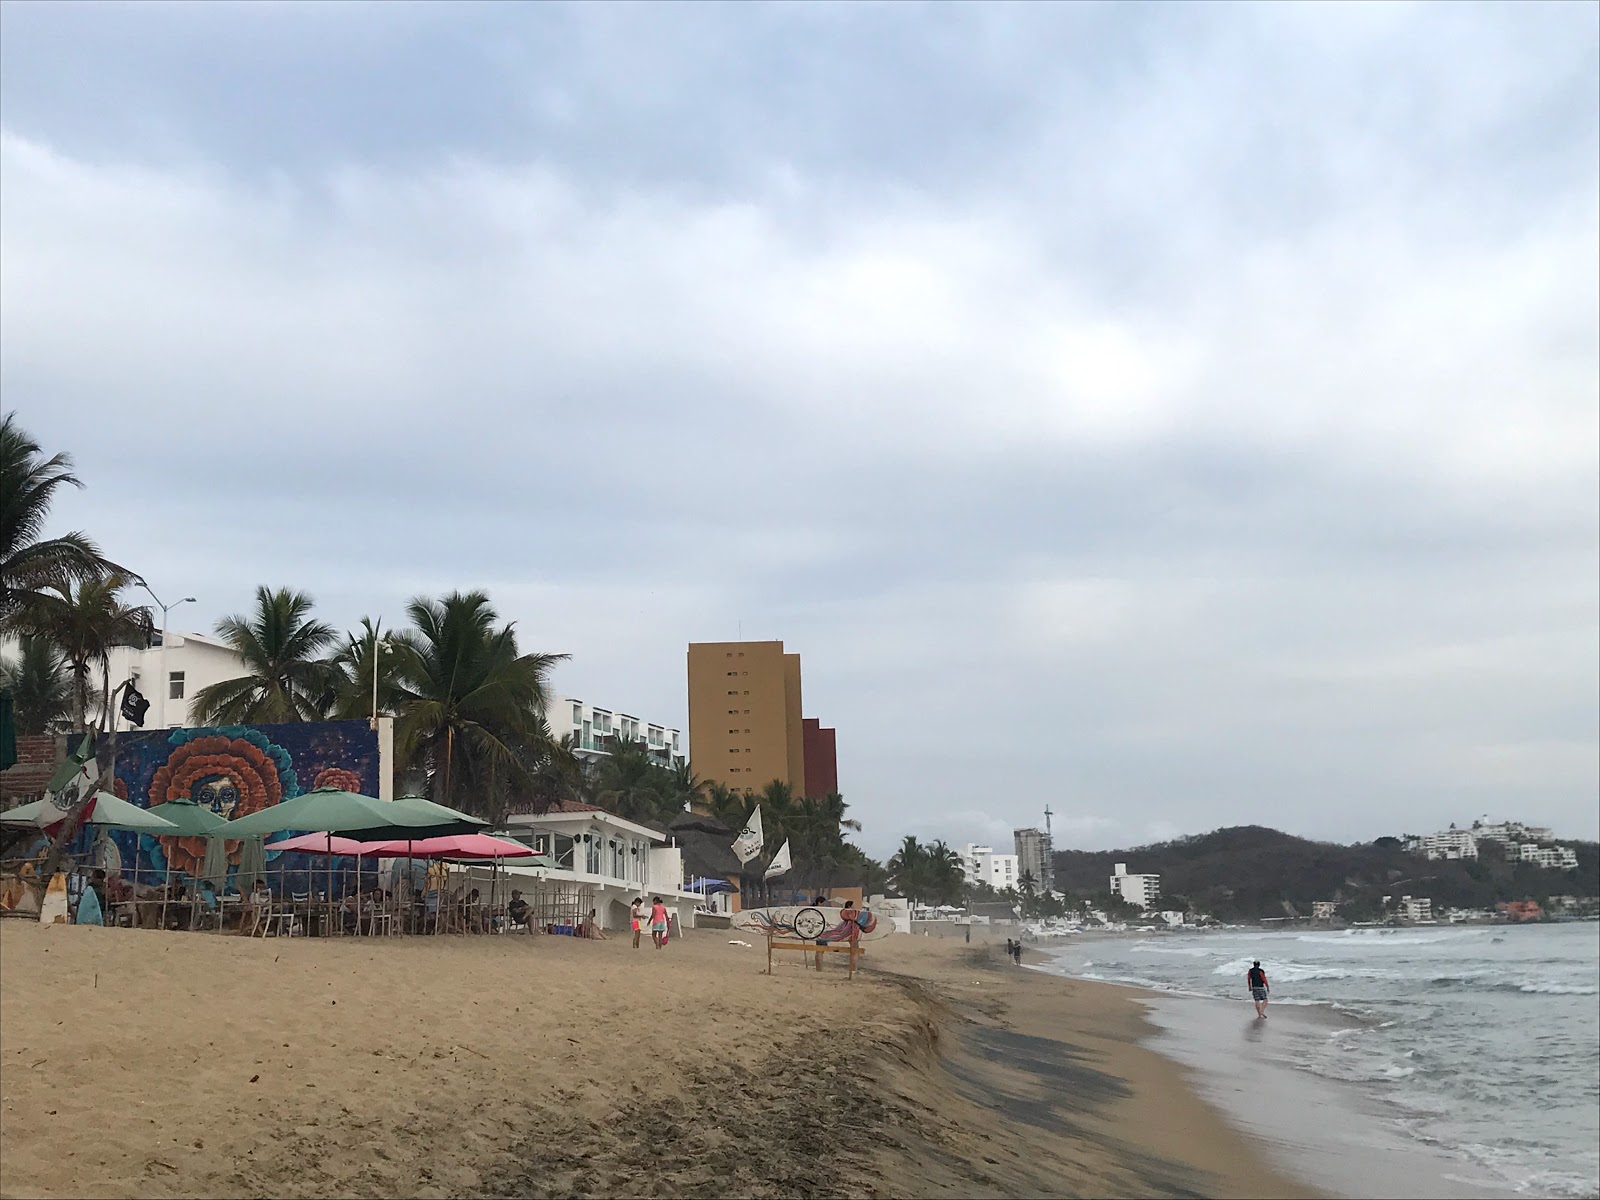 Fotografie cu Playa Olas Altas - locul popular printre cunoscătorii de relaxare